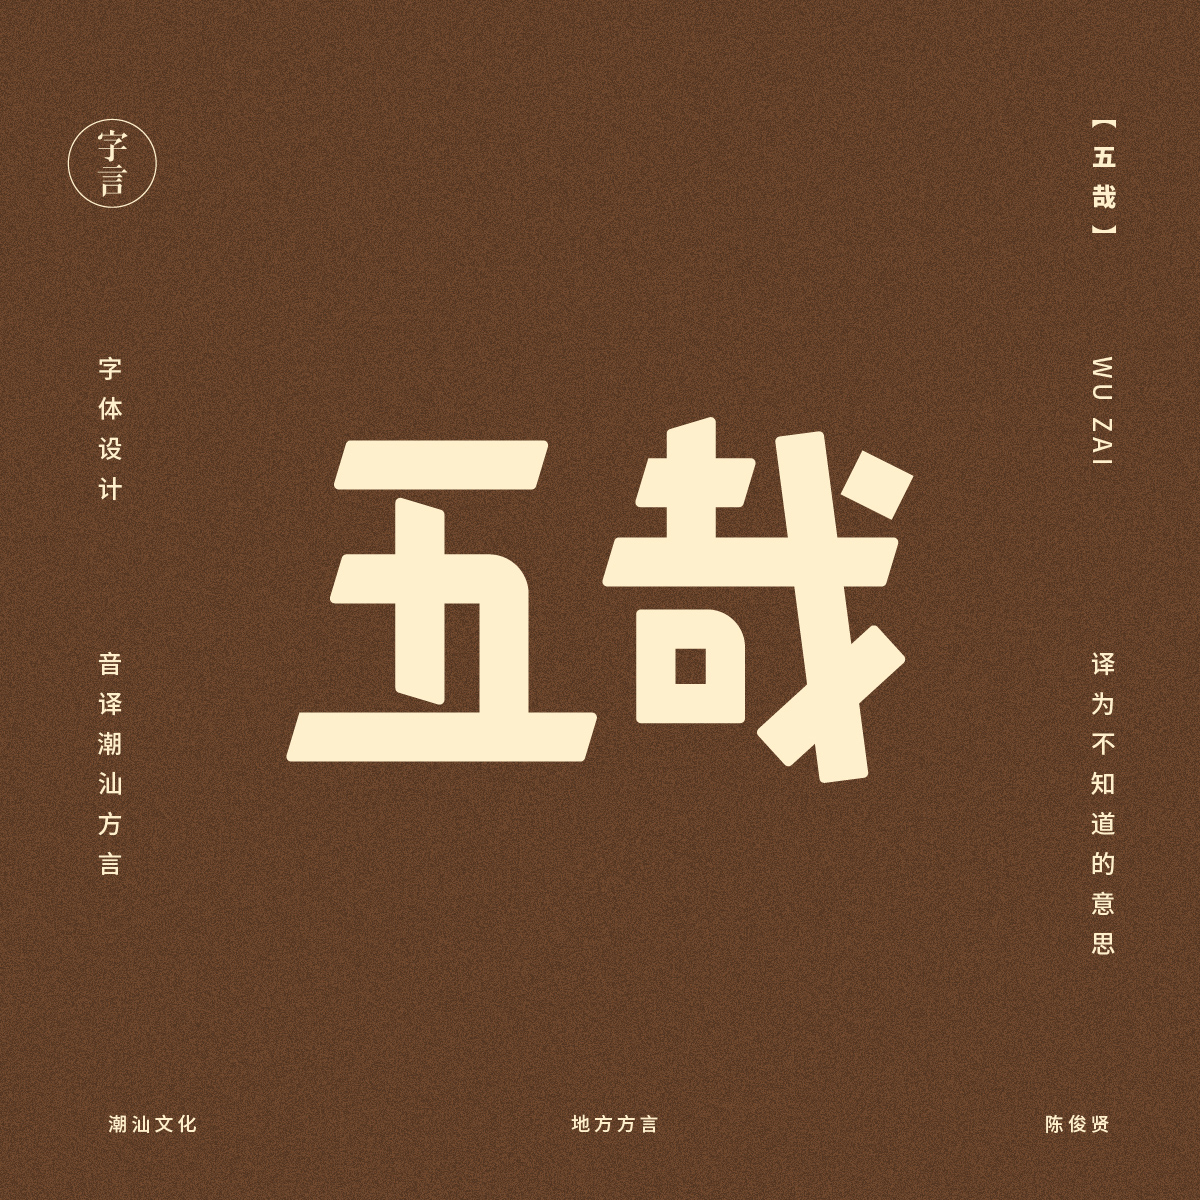 字体设计 图形设计 品牌推广 Typeface font design Chinese culture graphic design 